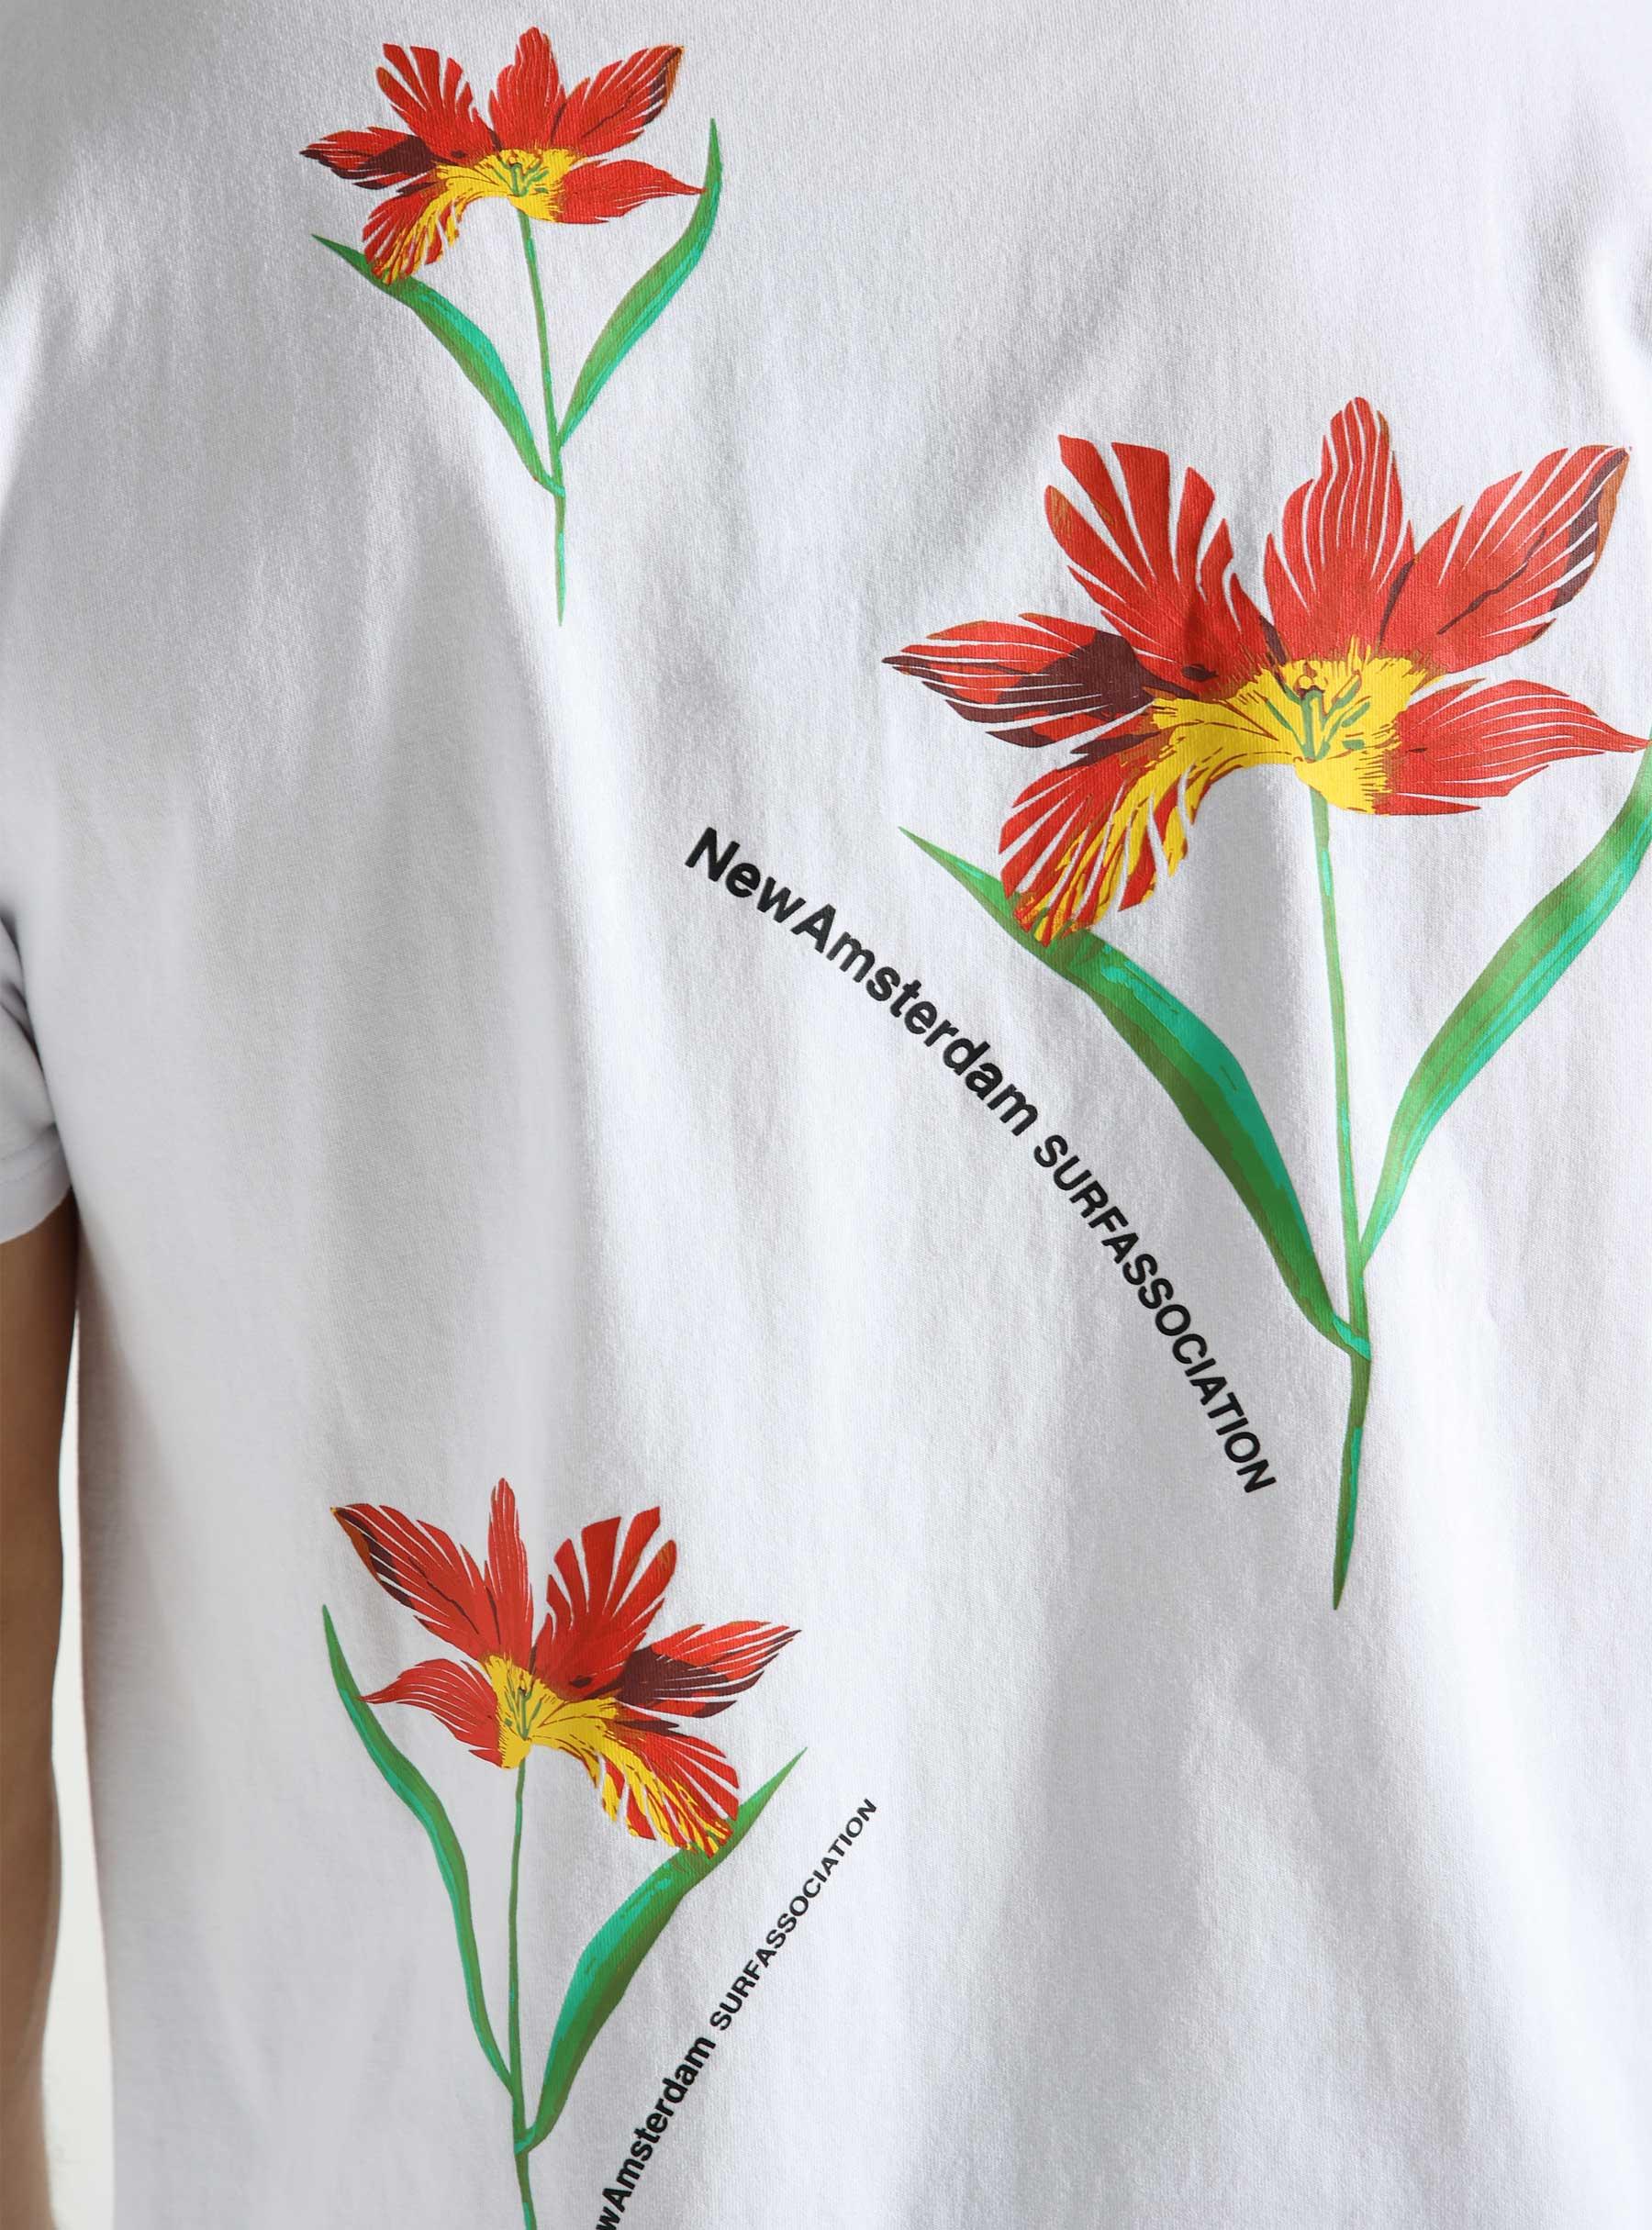 Tulip T-shirt White 2401095001